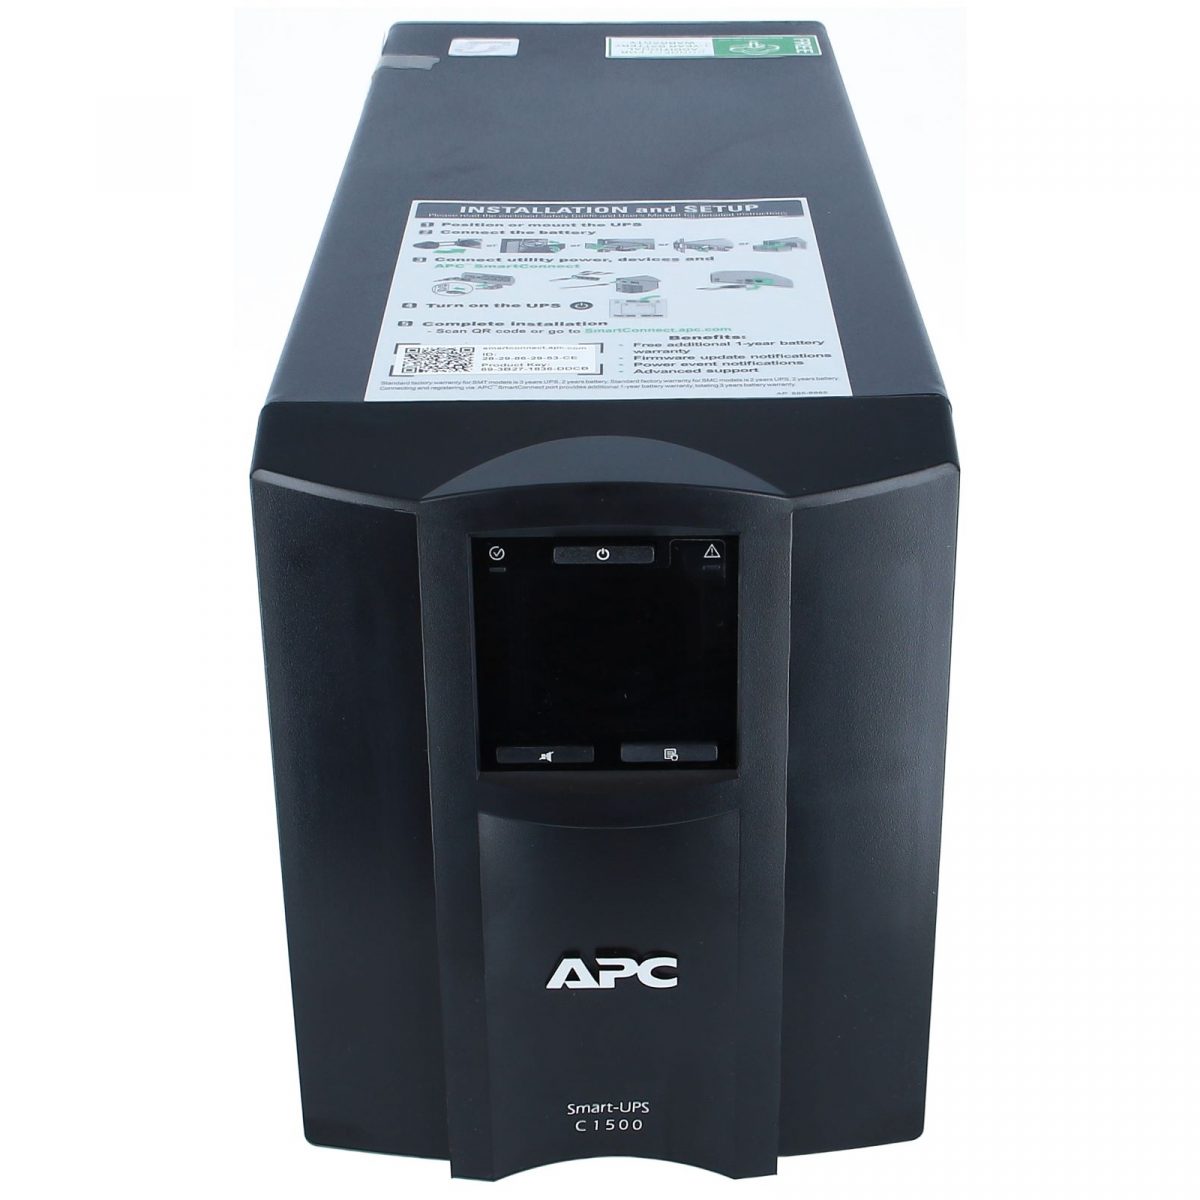 APC 1500 UPS / 12 month Warranty / New cells / SUA1500i